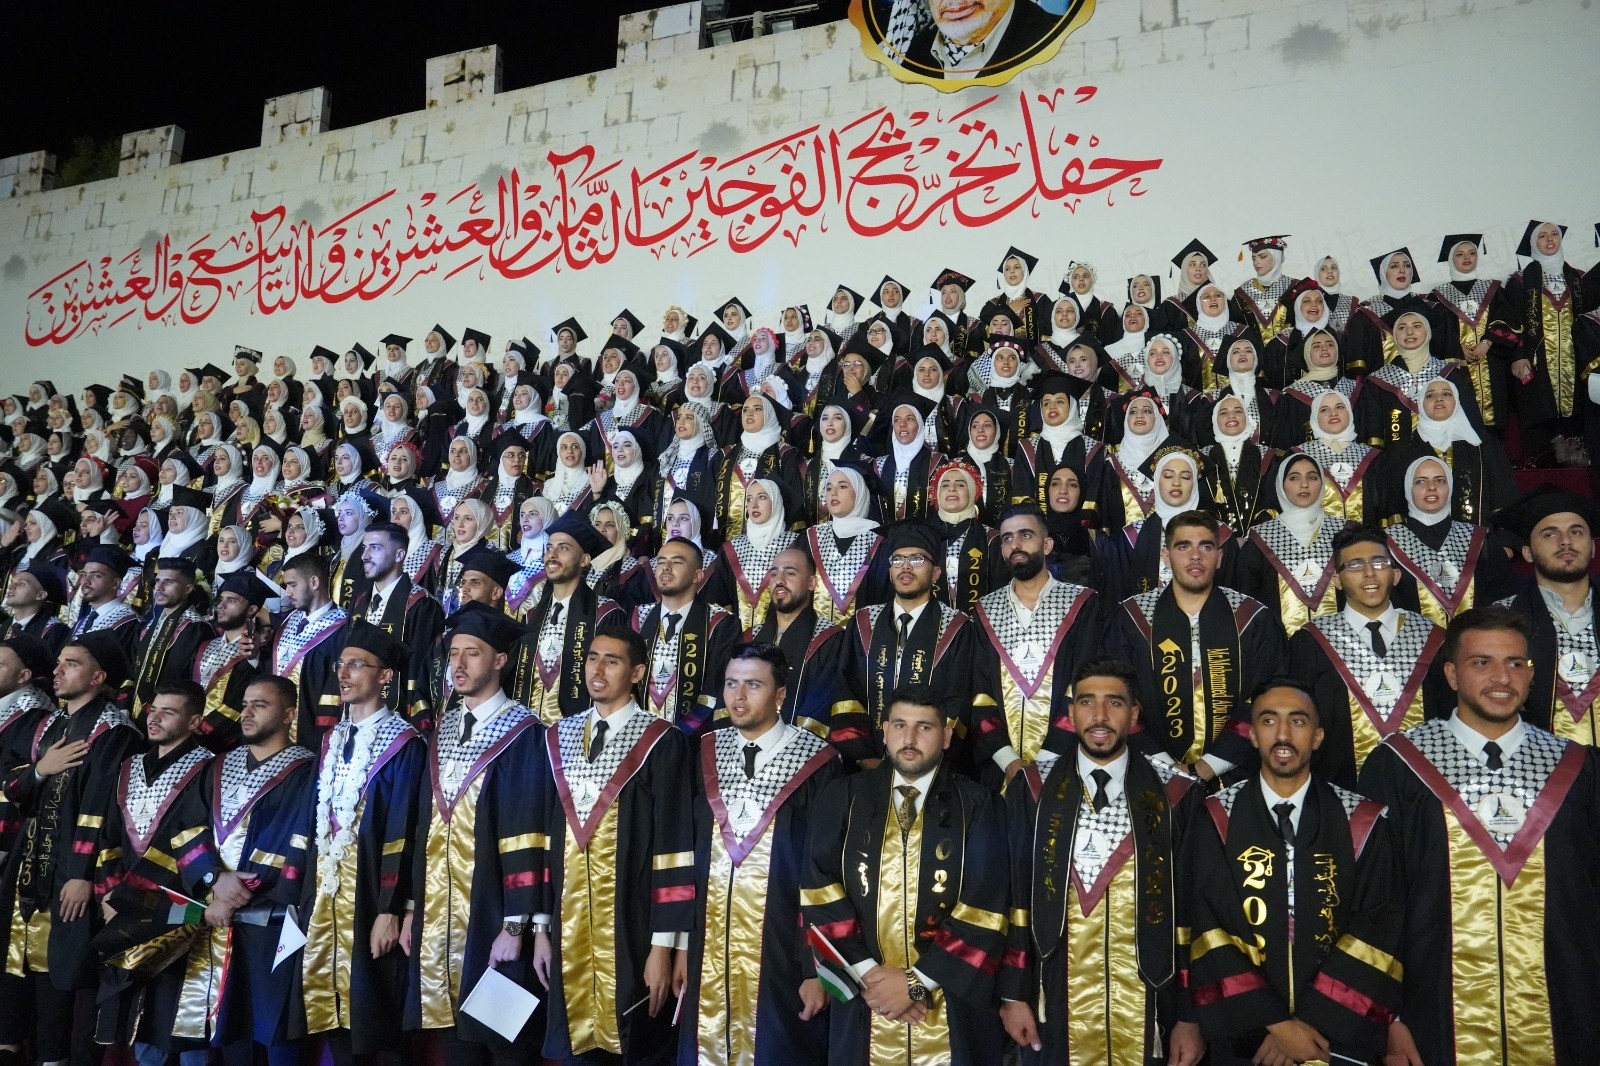 بالصور: تحت رعاية الرئيس عباس.. جامعة الأقصى تحتفل بتخريج طلبتها "فوج الأقصى"